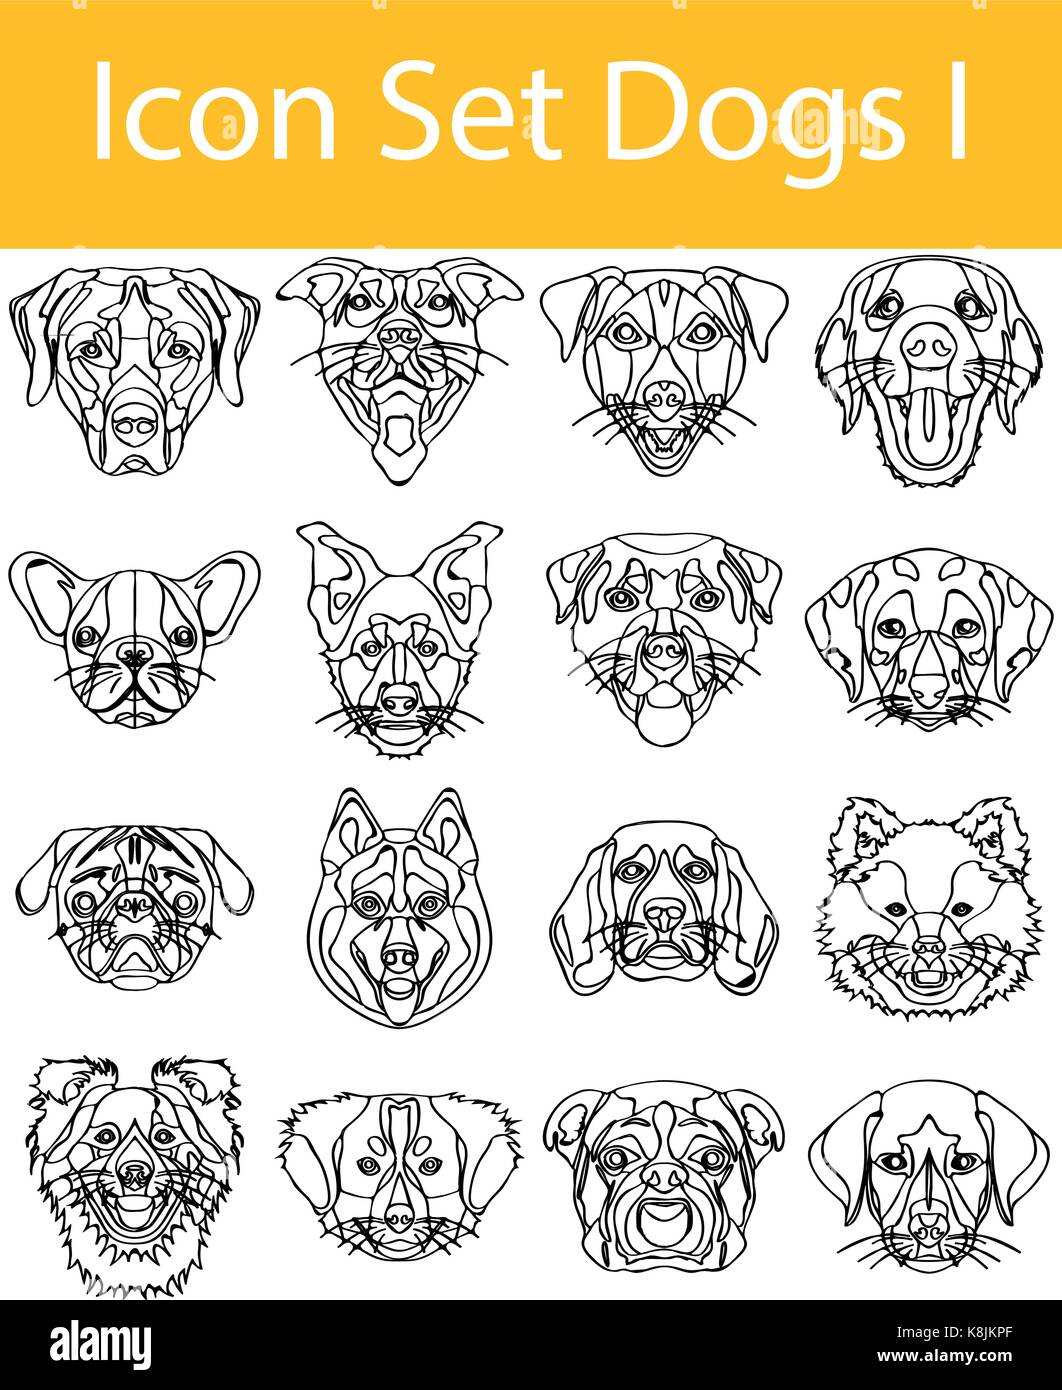 Gezeichnet Doodle gesäumt Icon Set Hunde ich mit 16 Icons für den kreativen Einsatz in Grafik Design Stock Vektor